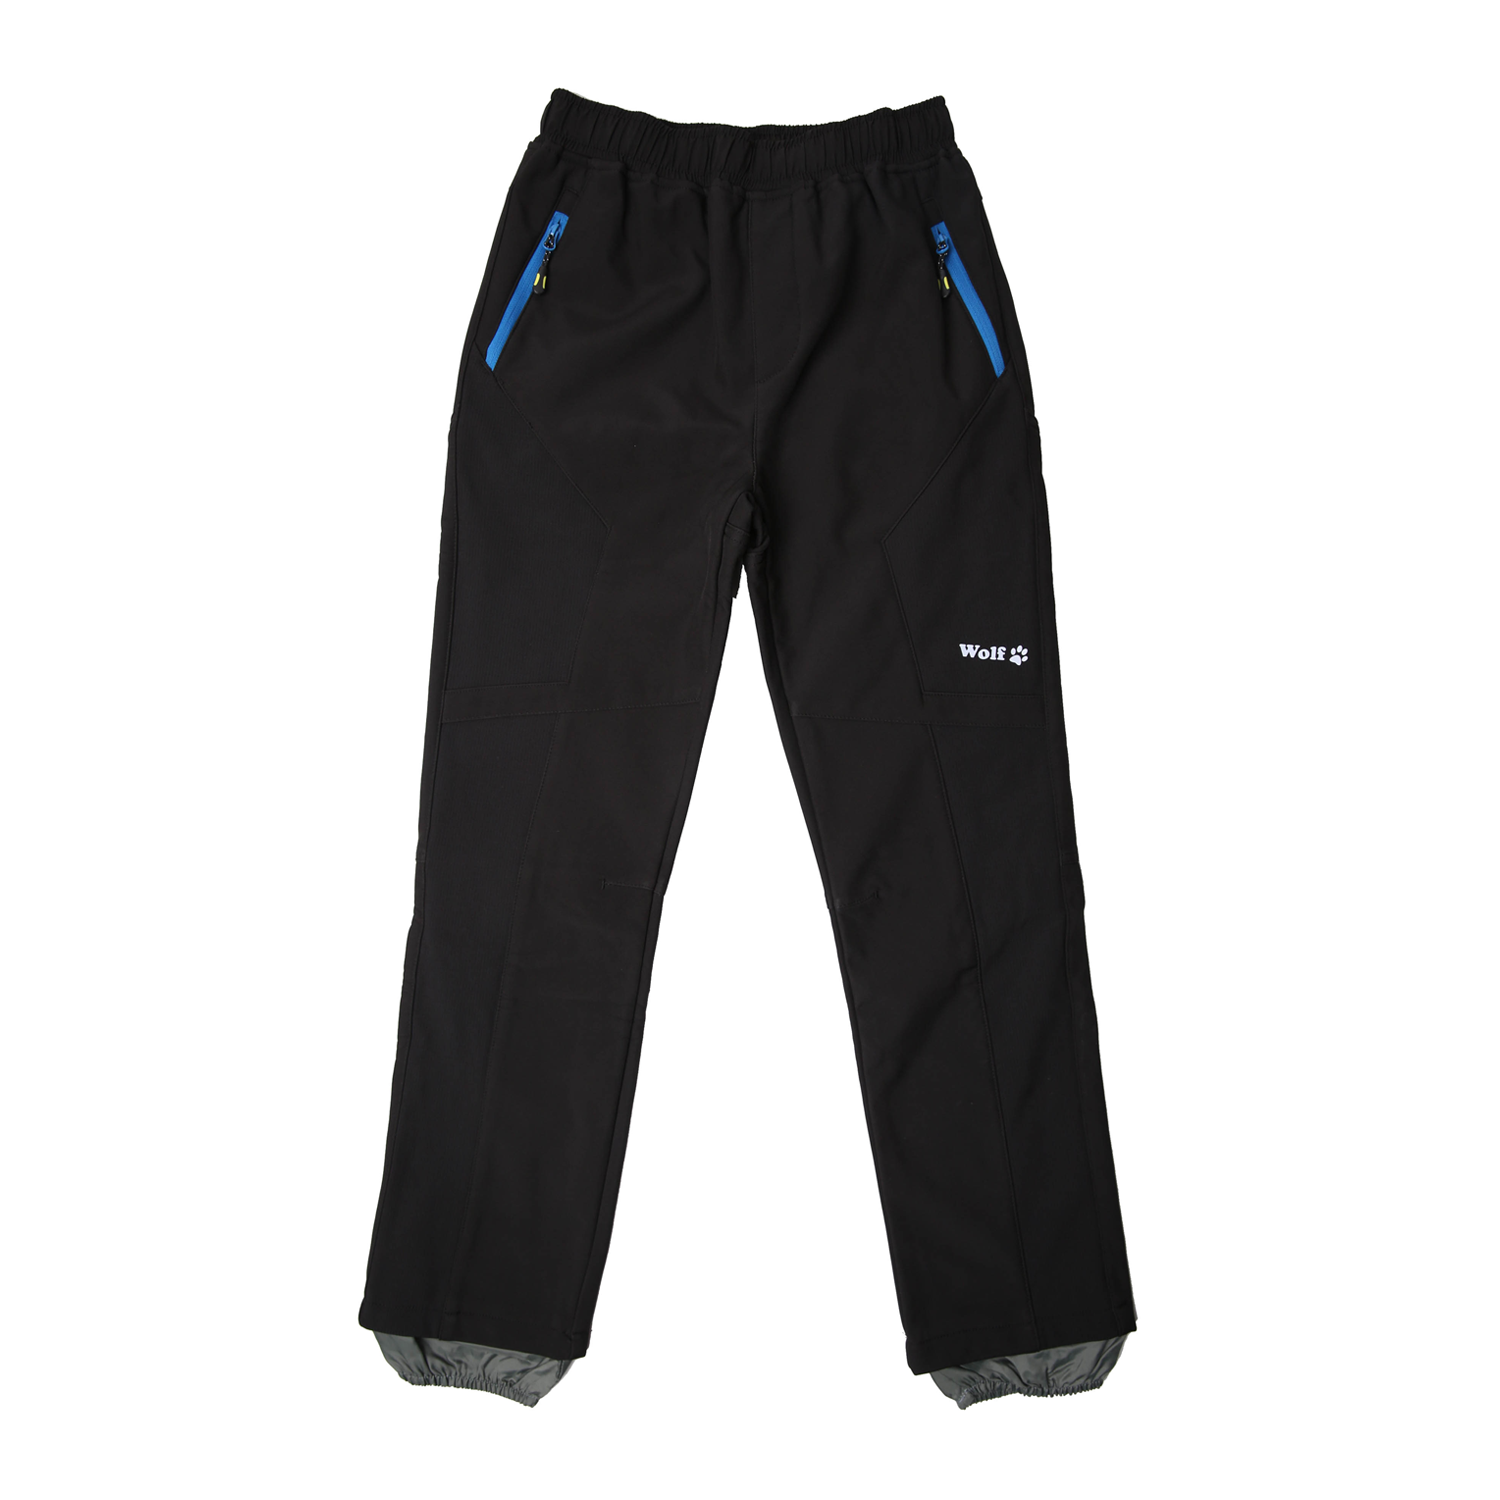 Chlapecké softshellové kalhoty, zateplené - Wolf B2394, černá Barva: Černá, Velikost: 128